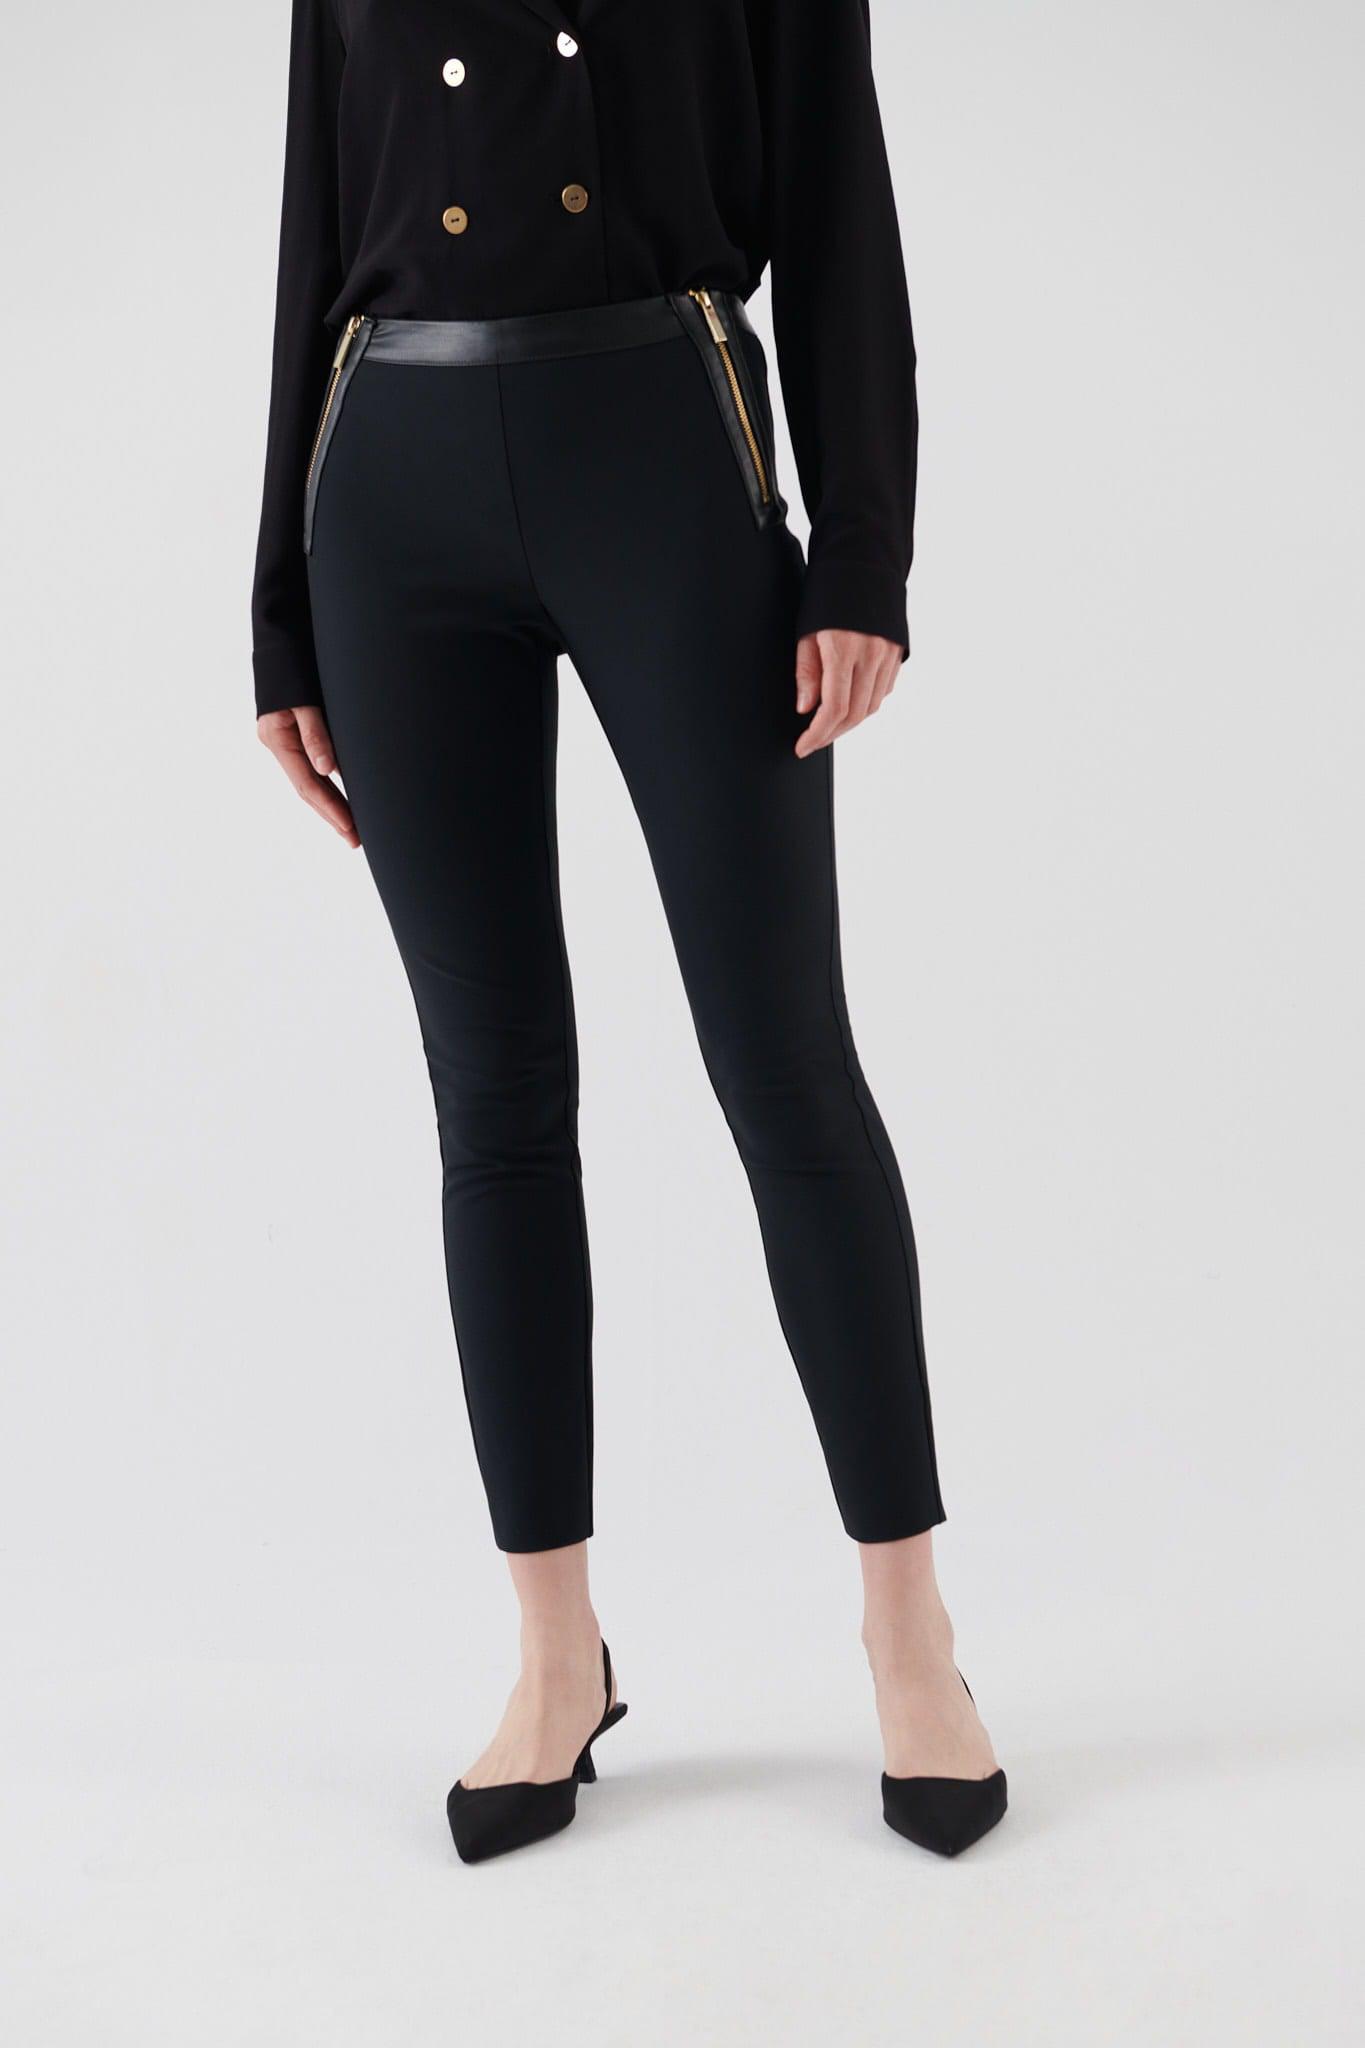 Double Zipper Black Women's Trousers --[BLACK]